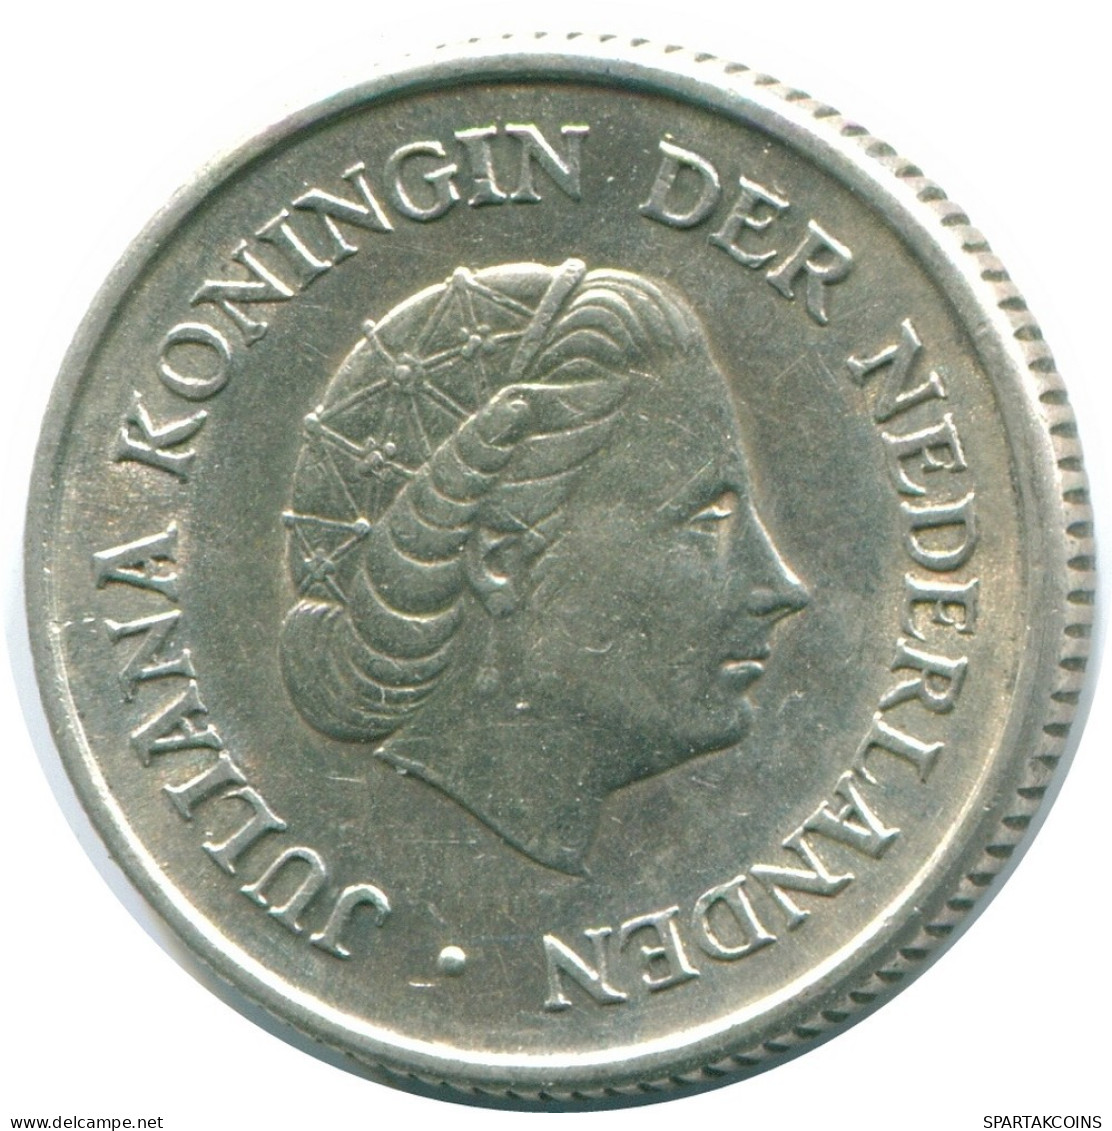 1/4 GULDEN 1967 NIEDERLÄNDISCHE ANTILLEN SILBER Koloniale Münze #NL11467.4.D.A - Antille Olandesi